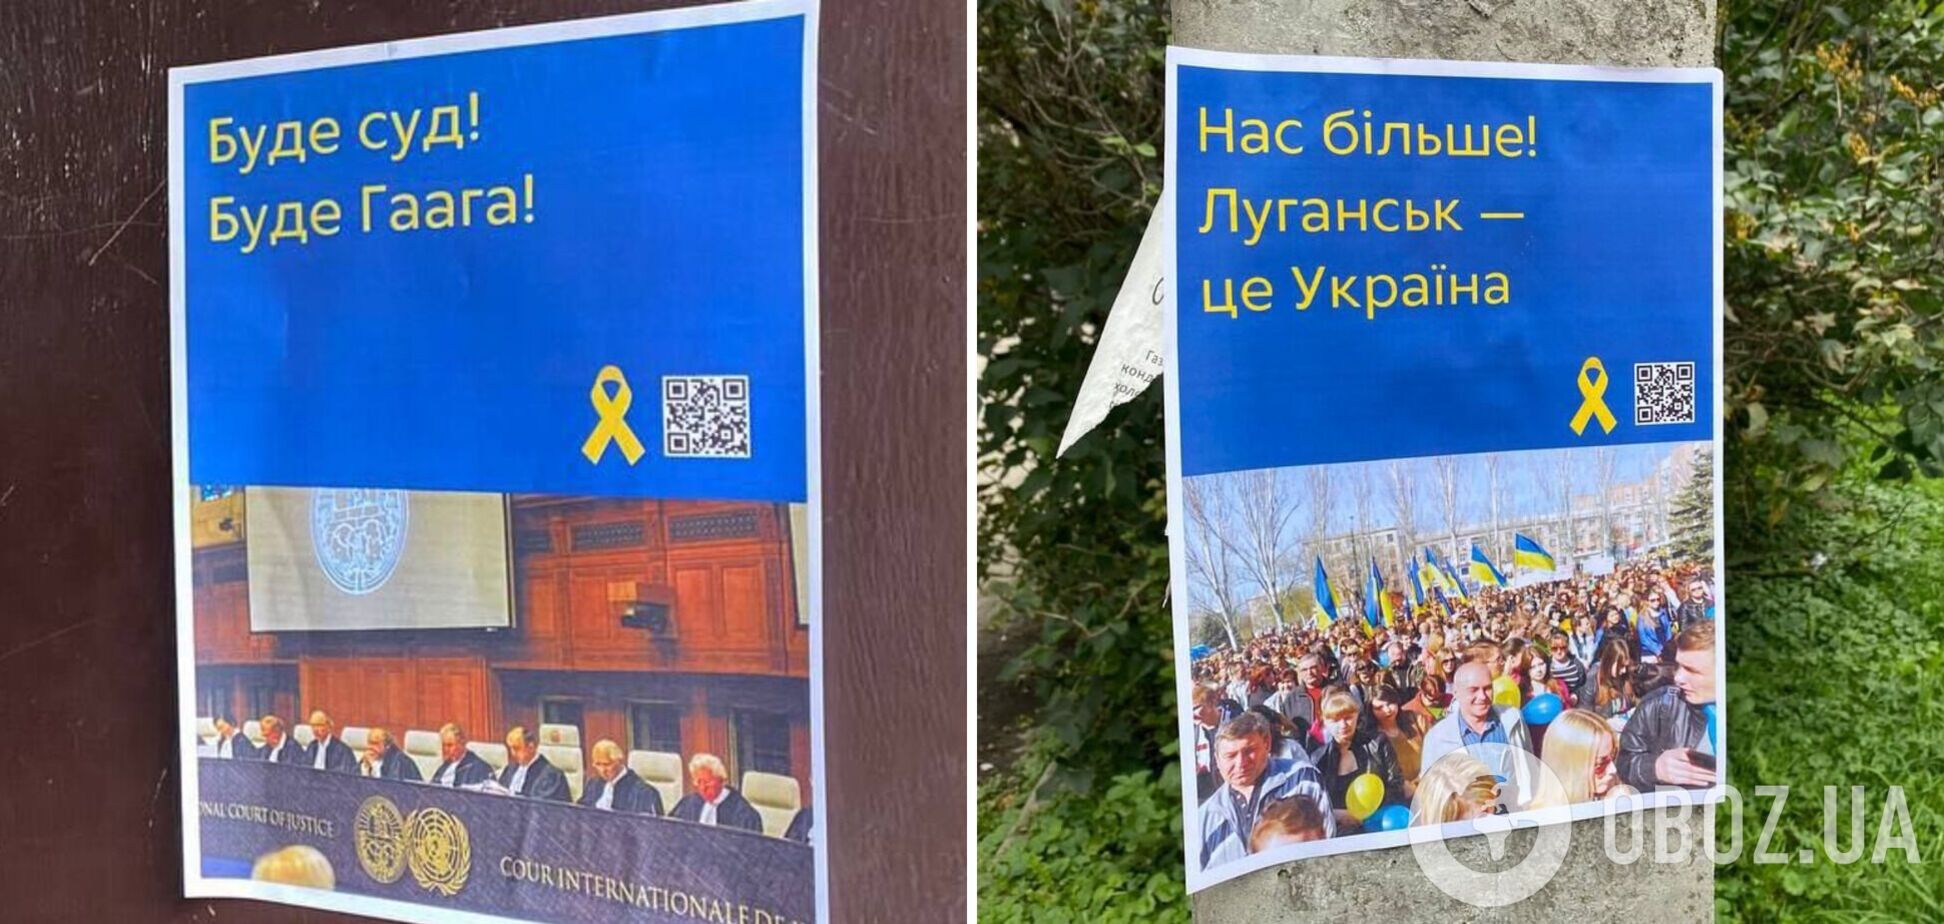 'Нас більше': партизани нагадали окупантам, що Донецьк і Луганськ – це Україна. Фото акції